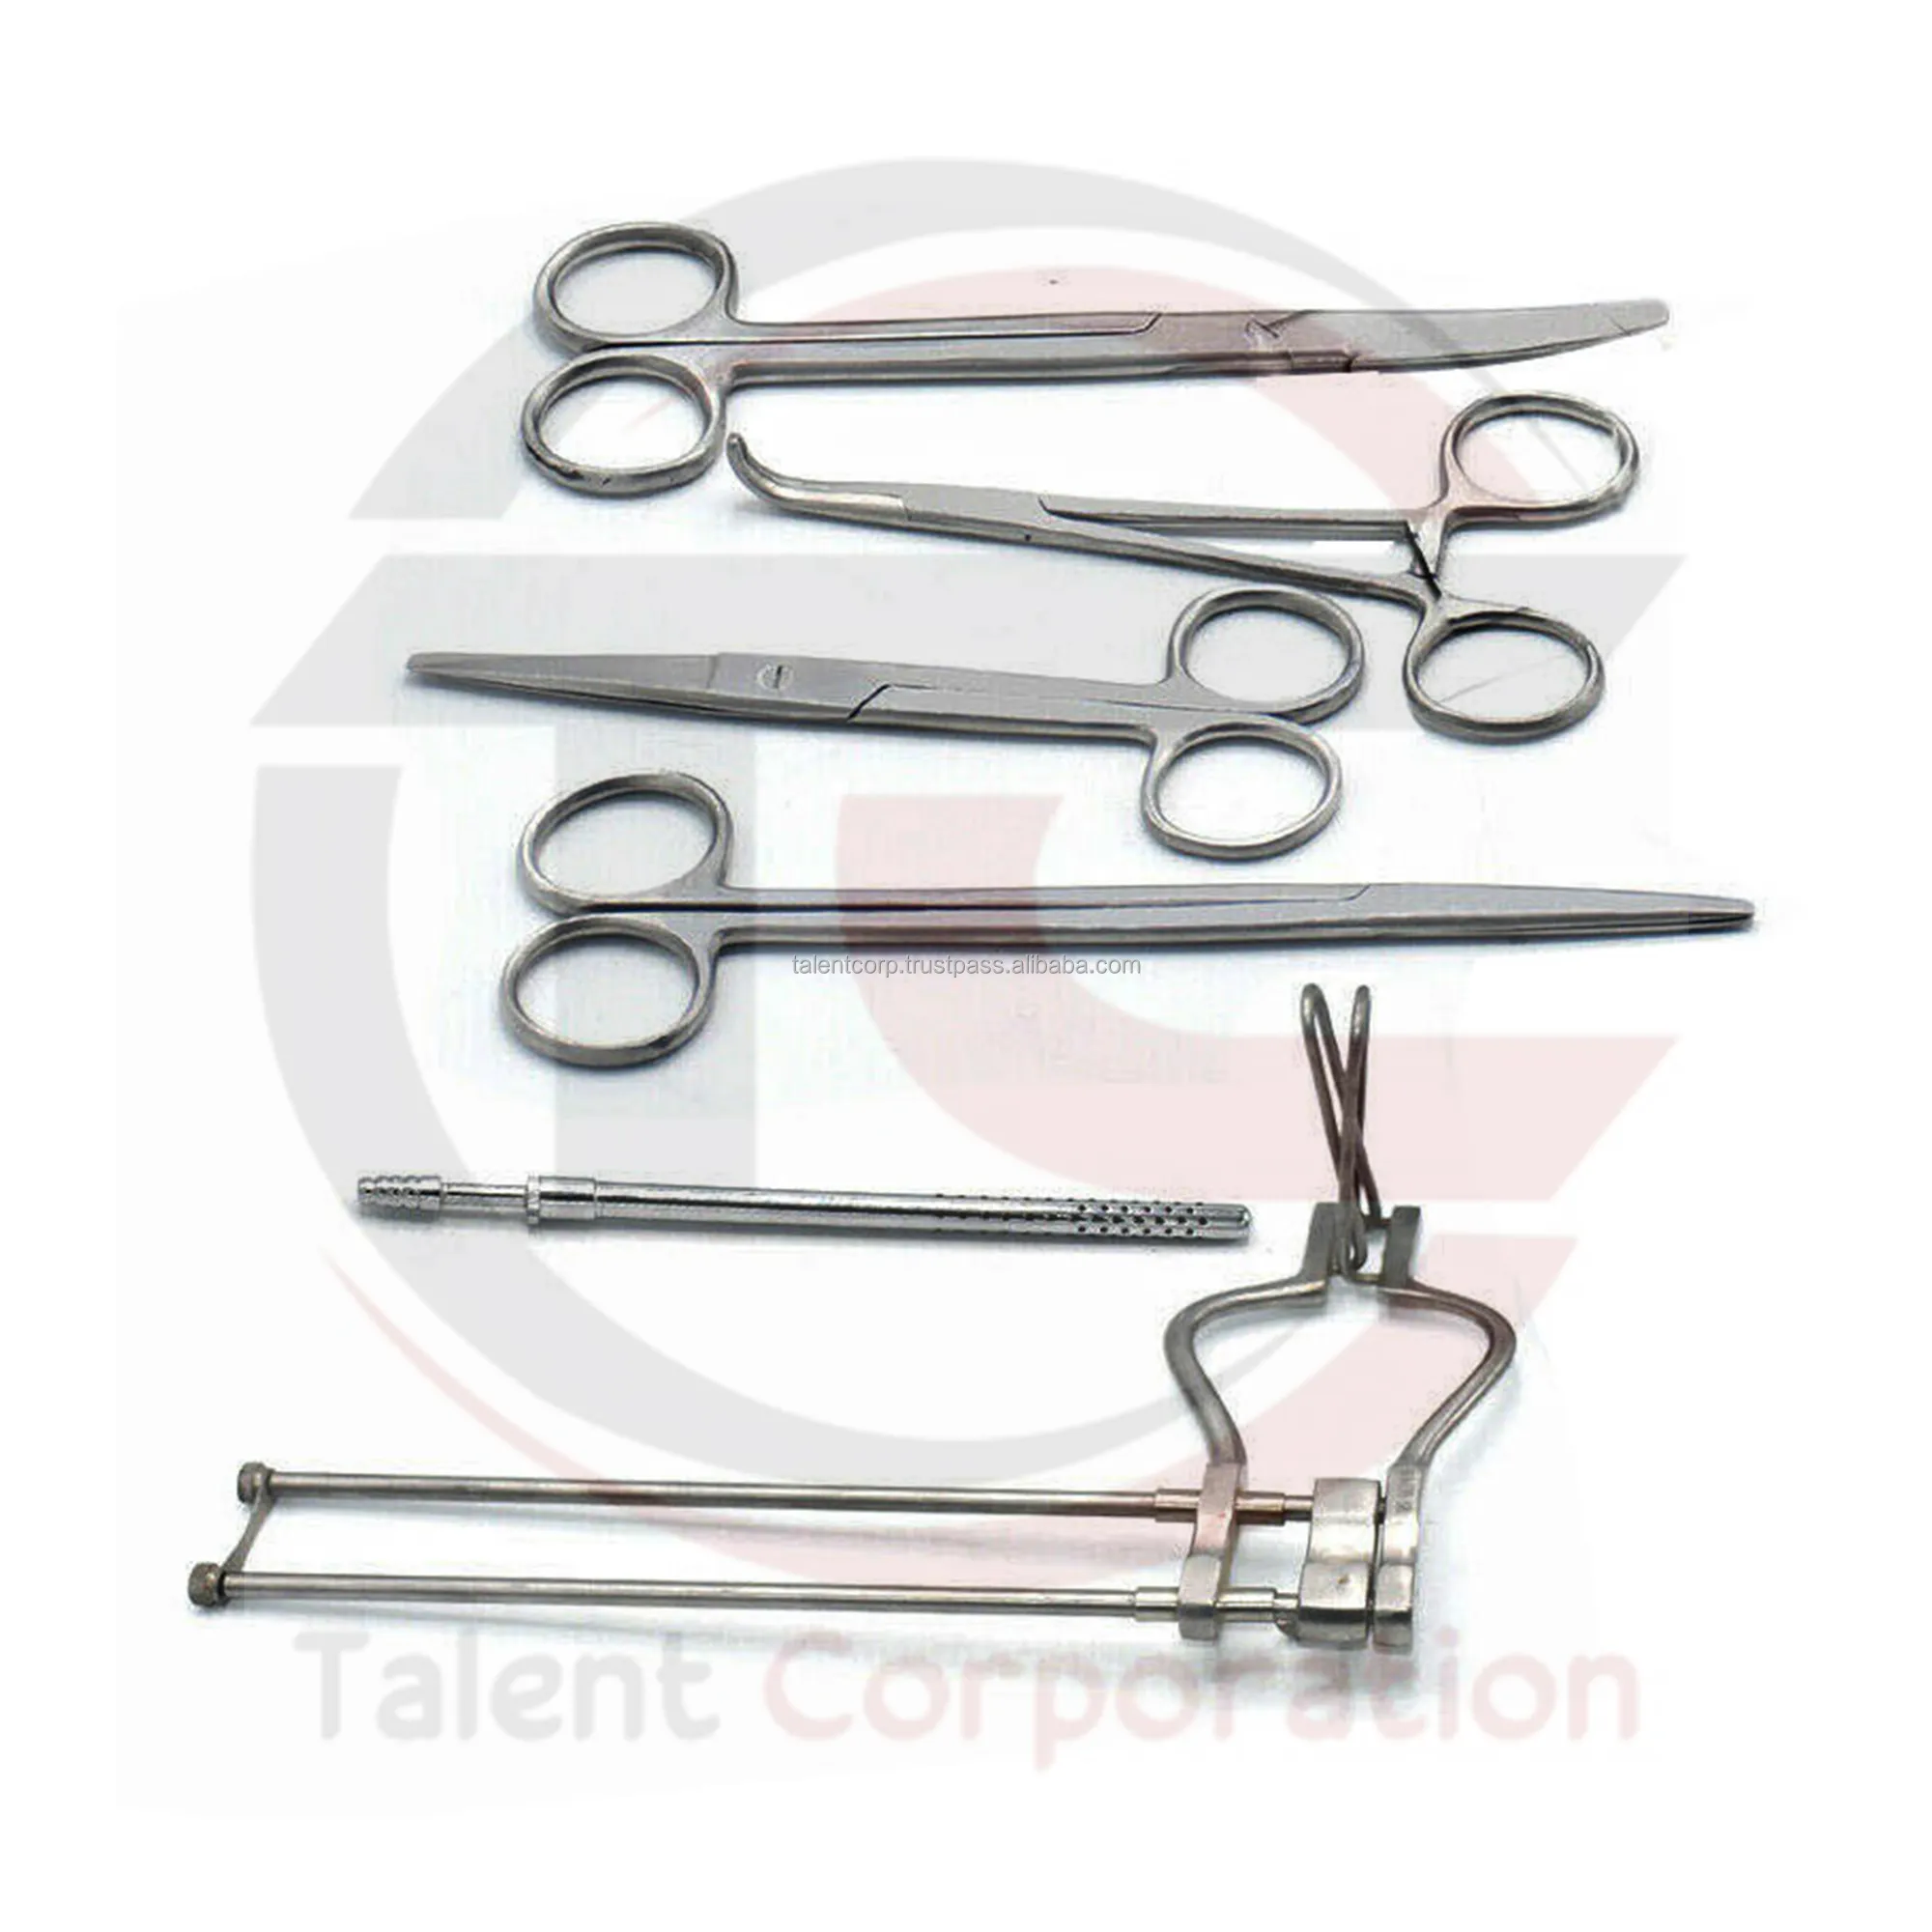 TALENT-Kit de instrumentos quirúrgicos, 14 unidades